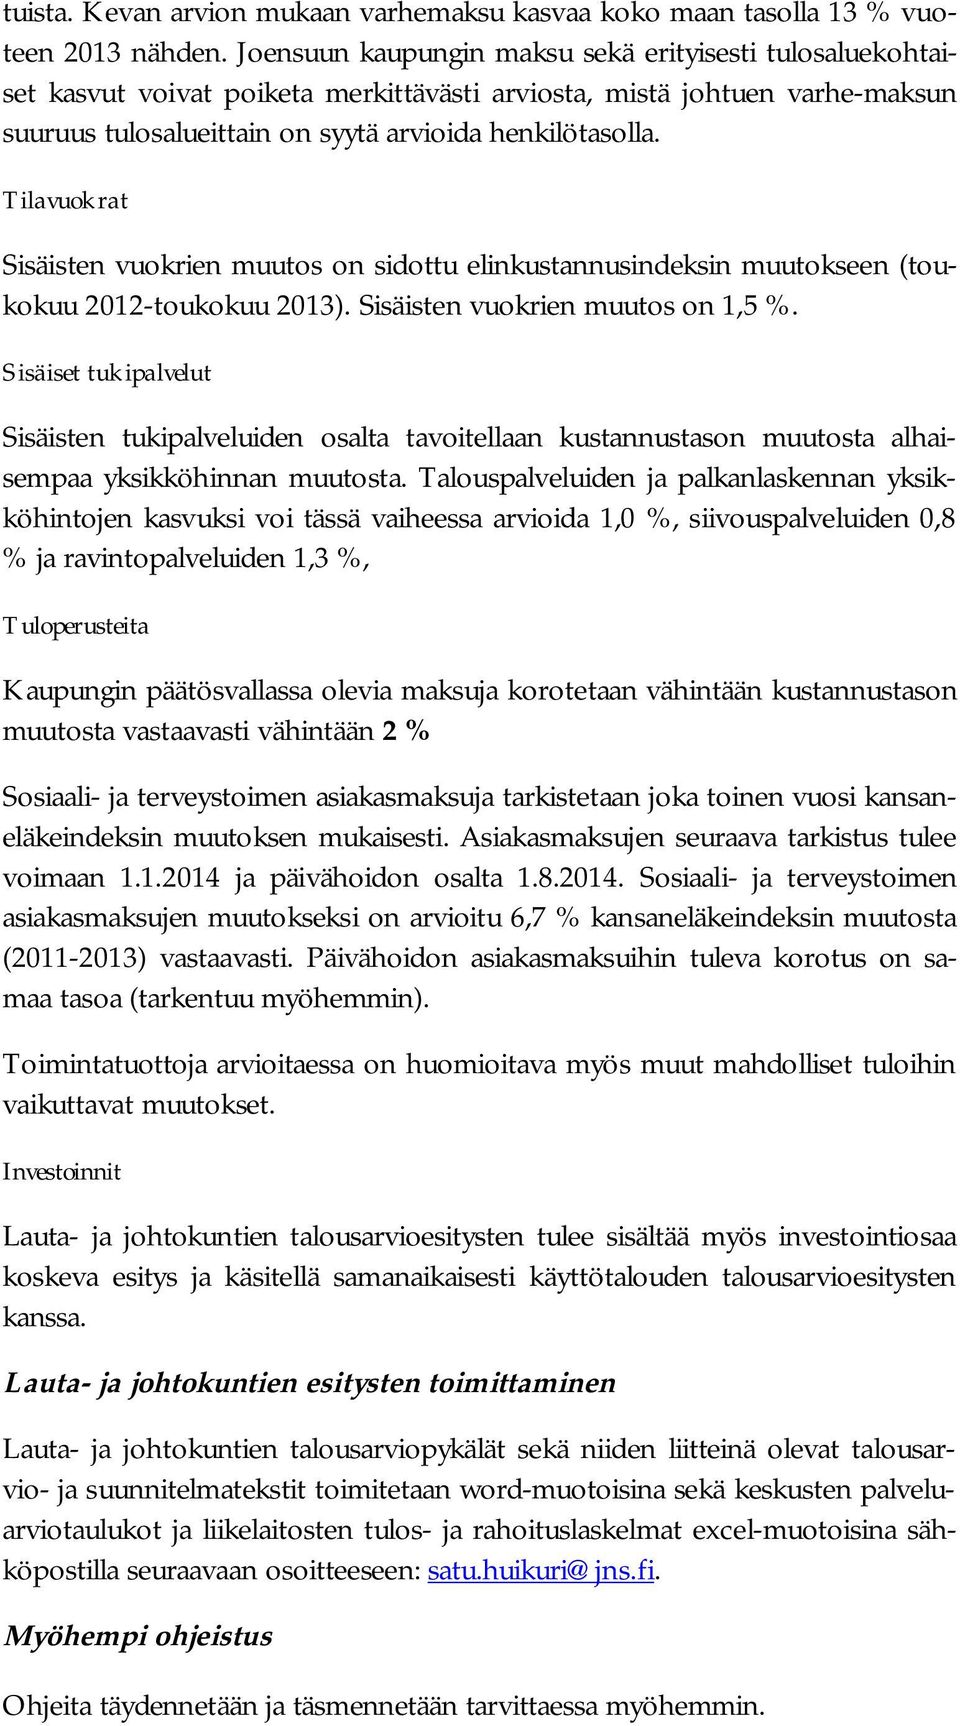 Tilavuokrat Sisäisten vuokrien muutos on sidottu elinkustannusindeksin muutokseen (toukokuu 2012-toukokuu 2013). Sisäisten vuokrien muutos on 1,5 %.